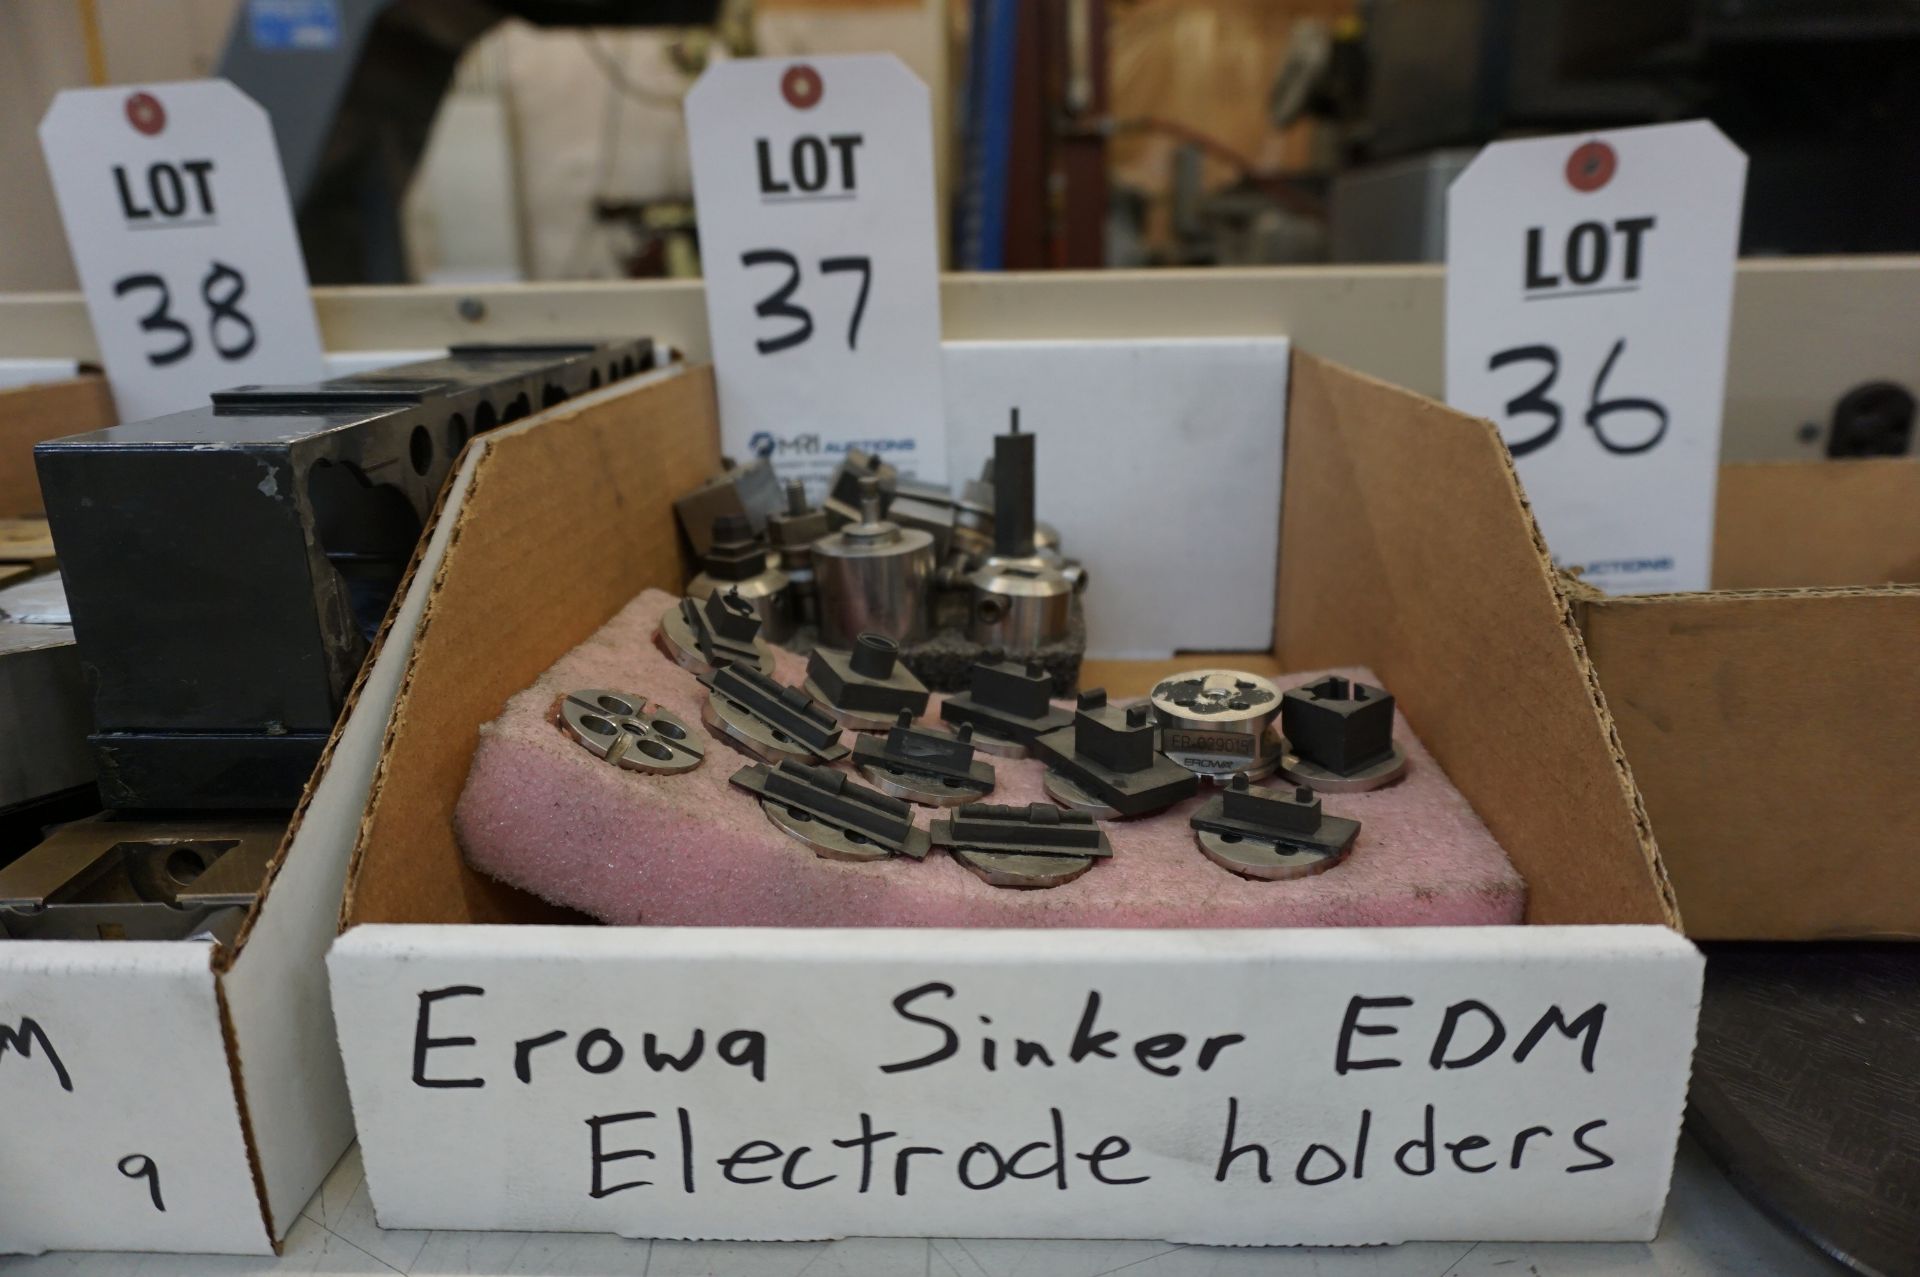 MISC. EROWA ELECTRODE HOLDERS, FOR SINKER EDM